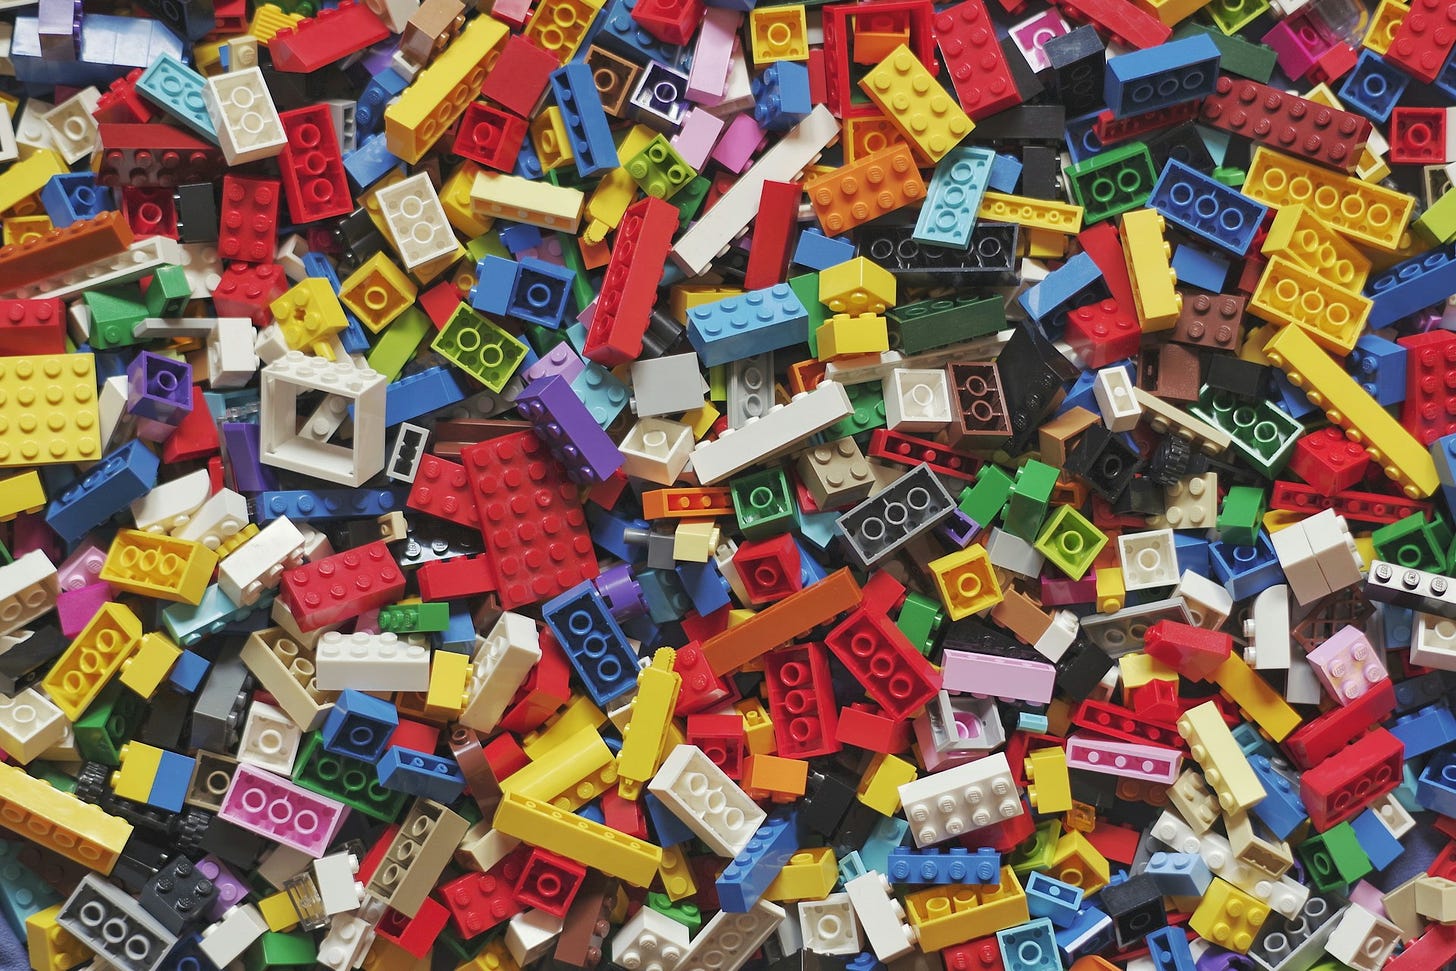 Inquadratura aerea di tantissimi pezzetti diversi e colorati di mattoncini Lego sparsi.